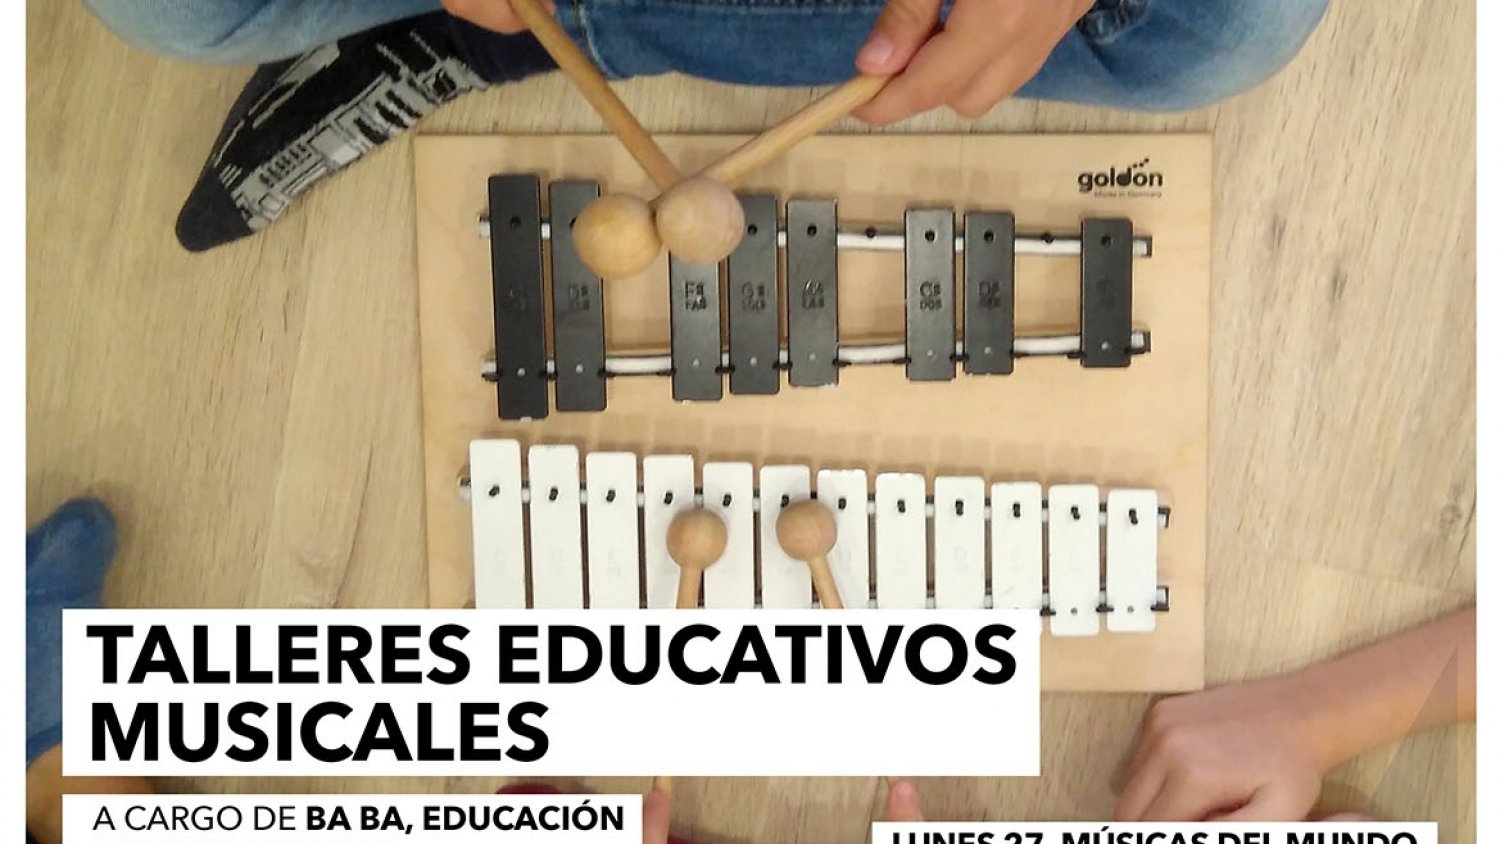 La Biblioteca Cánovas del Castillo acerca a los niños la cultura musical a través de distintos talleres educativos de carácter gratuito